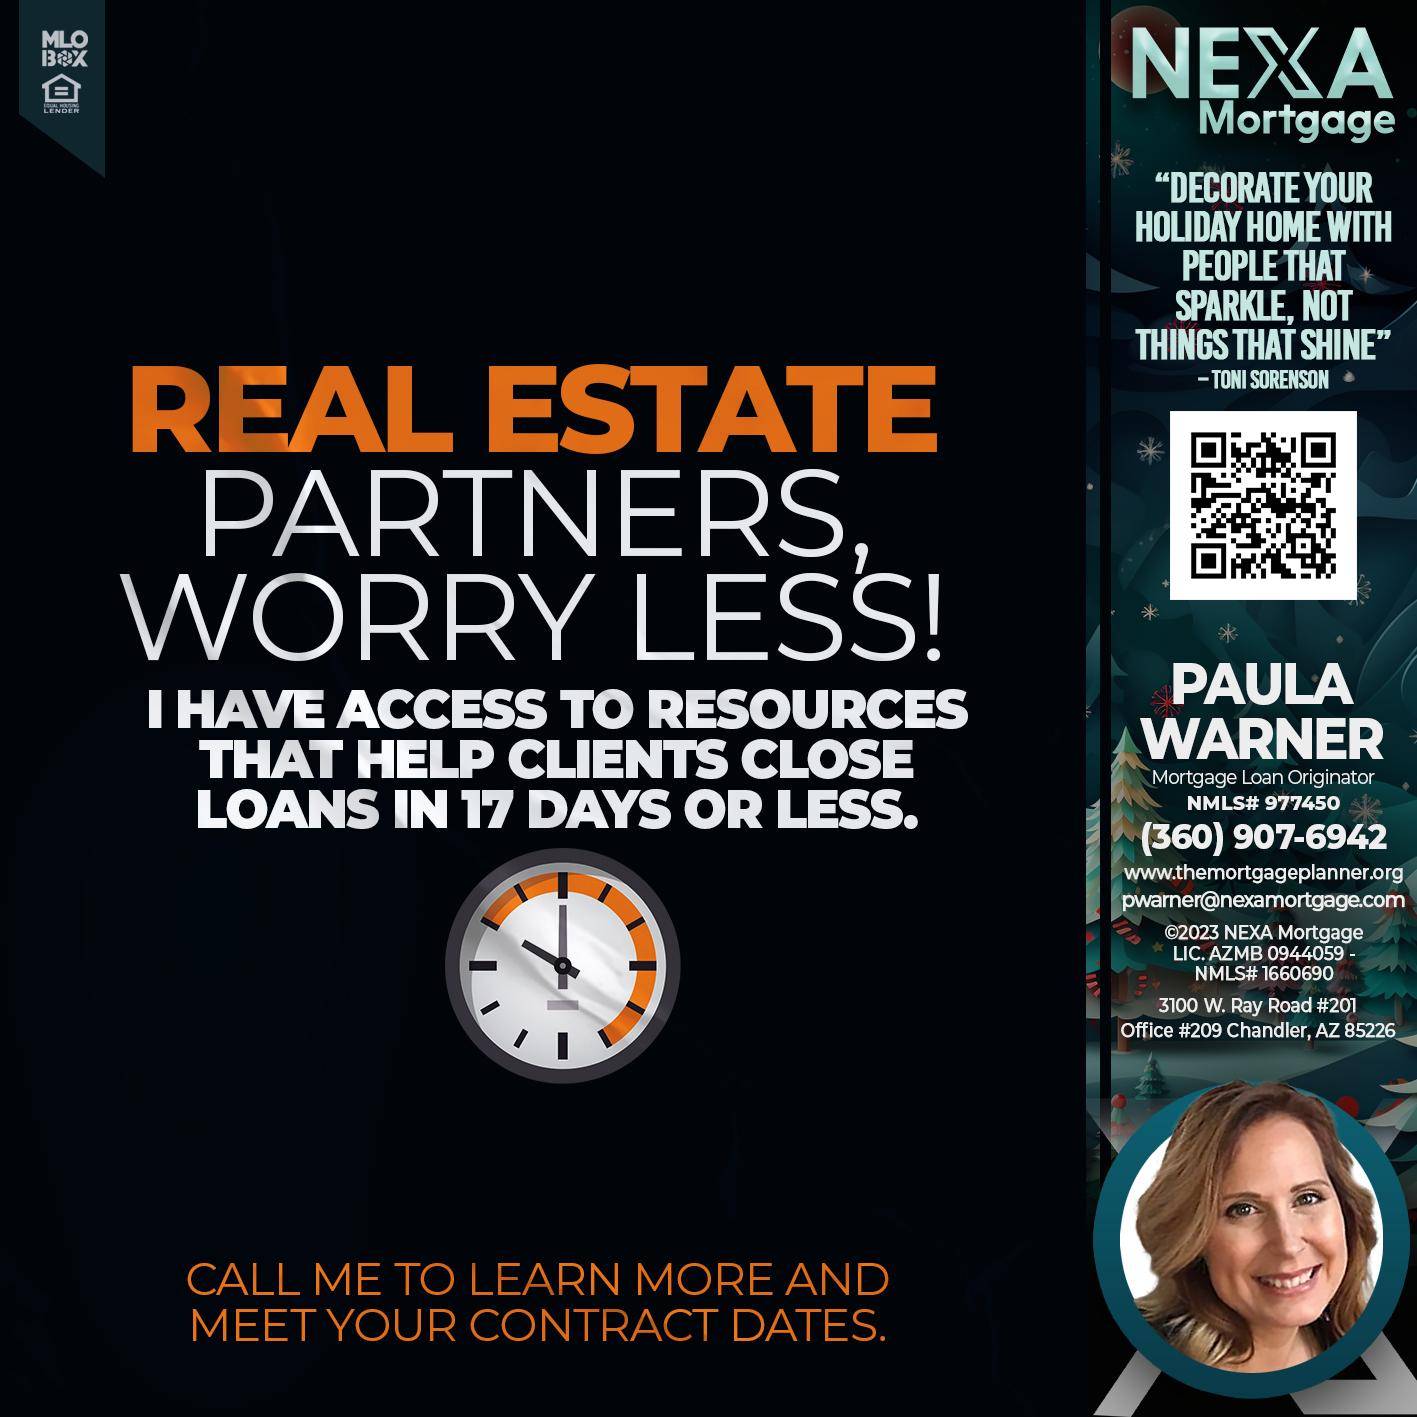 REAL ESTATE PARTNER - Paula Warner -Mortgage Loan Originator